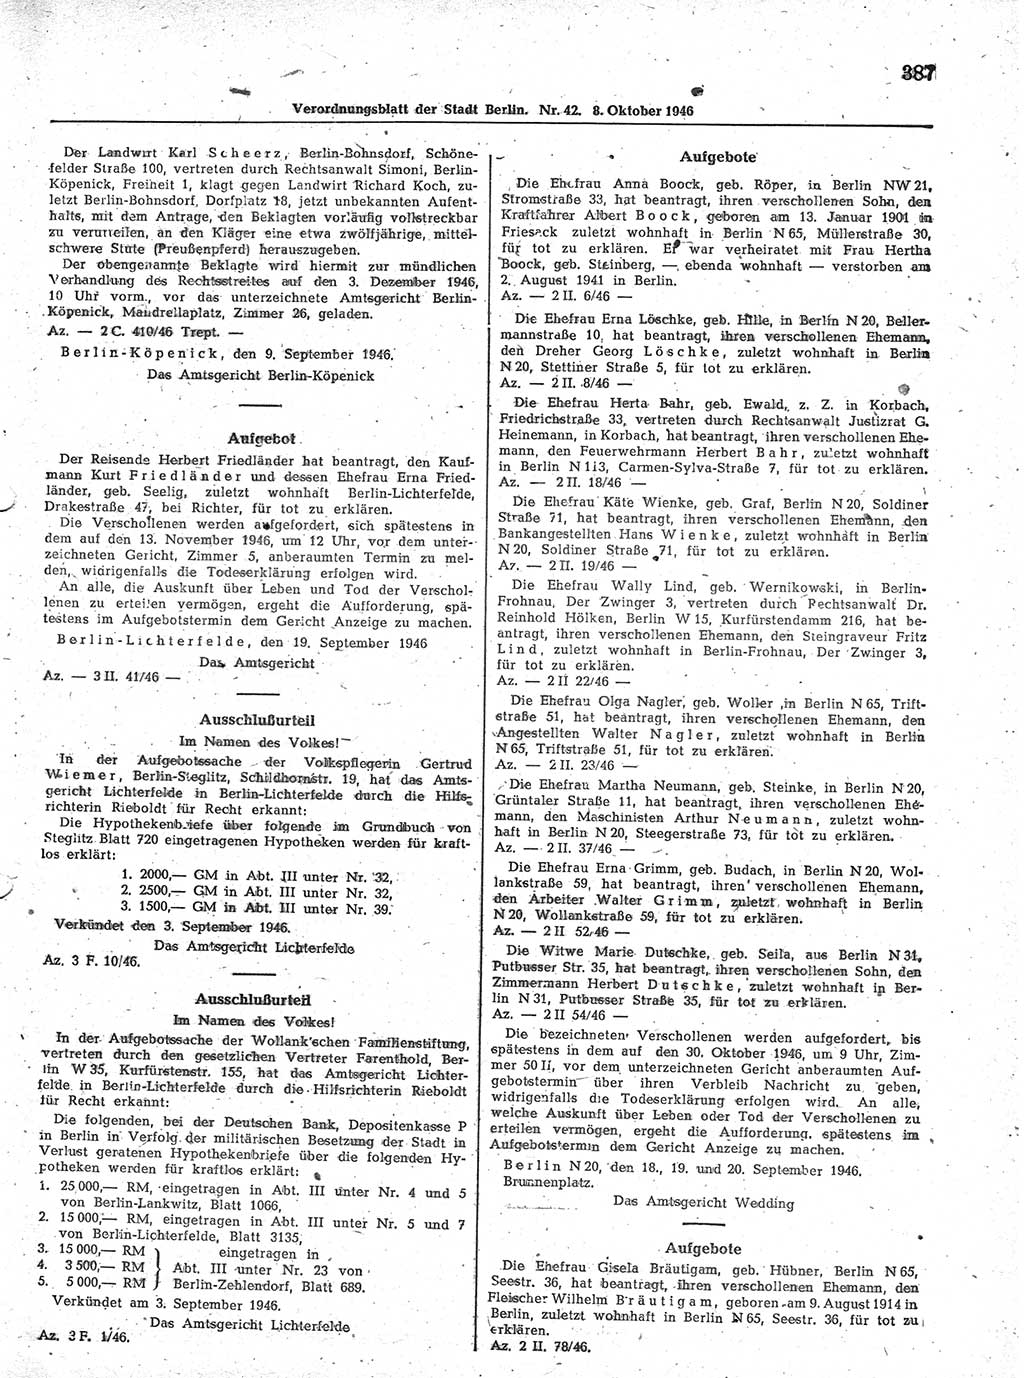 Verordnungsblatt (VOBl.) der Stadt Berlin, für Groß-Berlin 1946, Seite 387 (VOBl. Bln. 1946, S. 387)